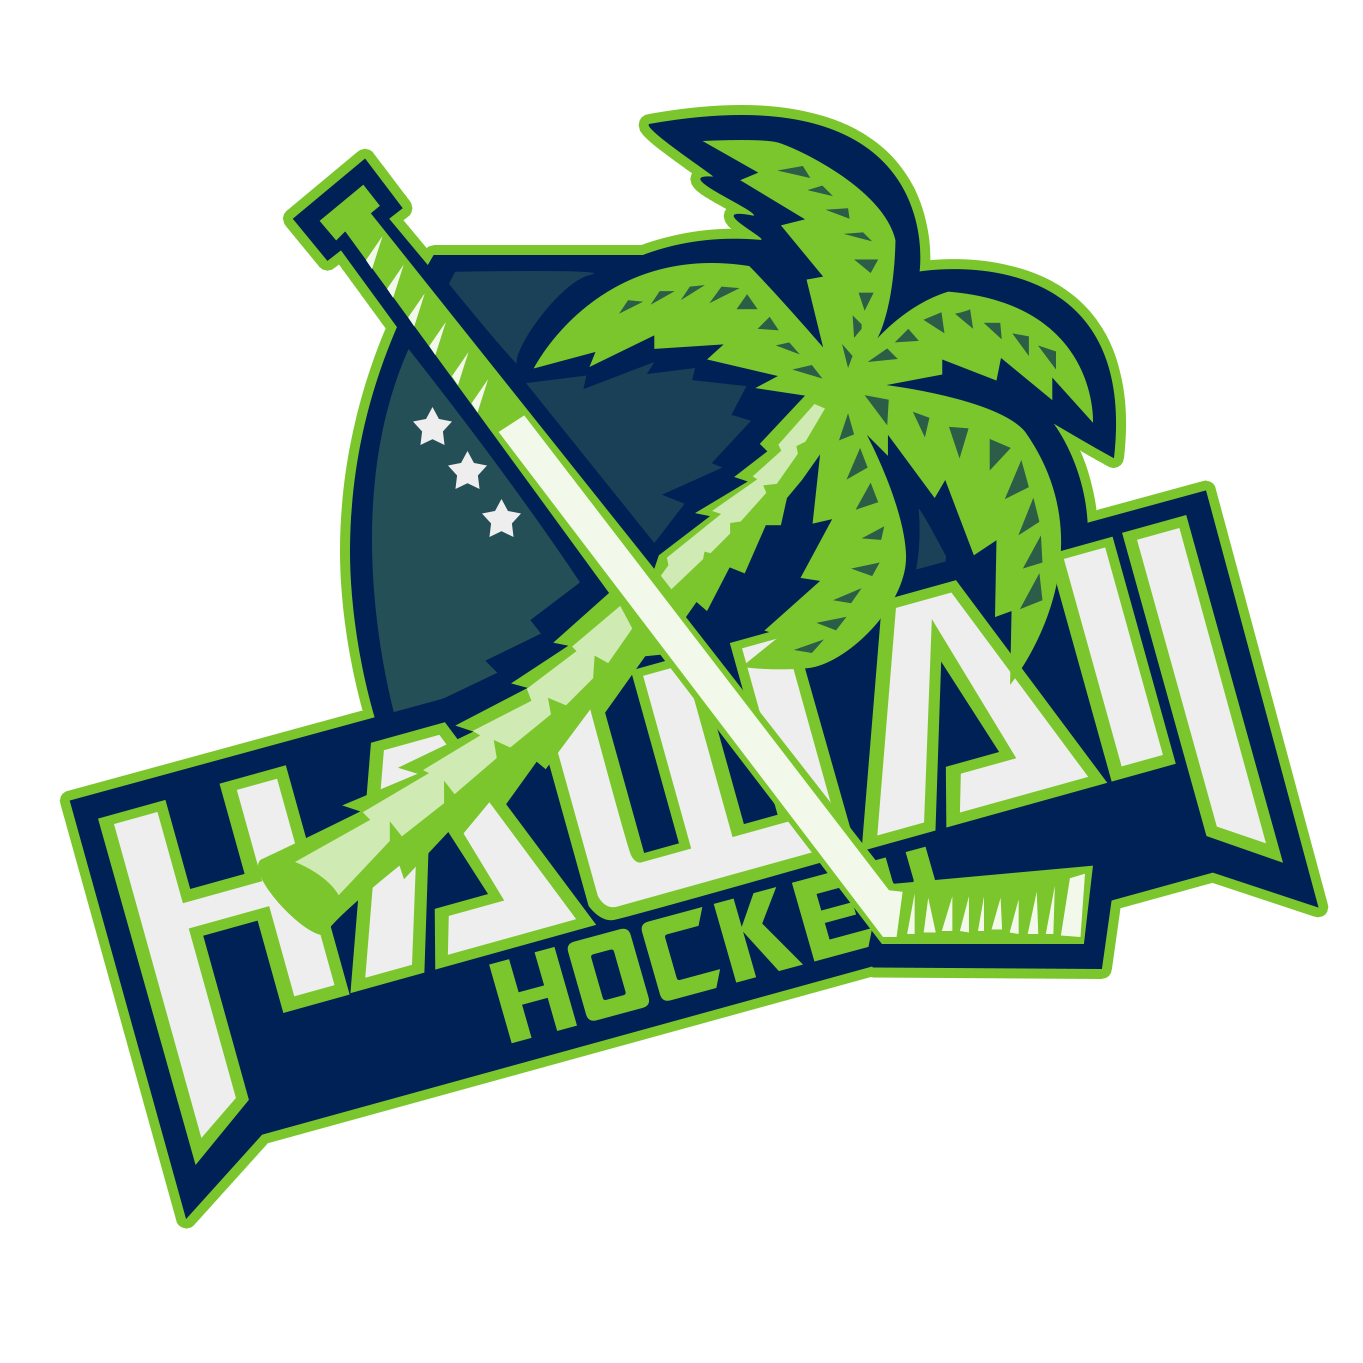 Hawaii Hockey